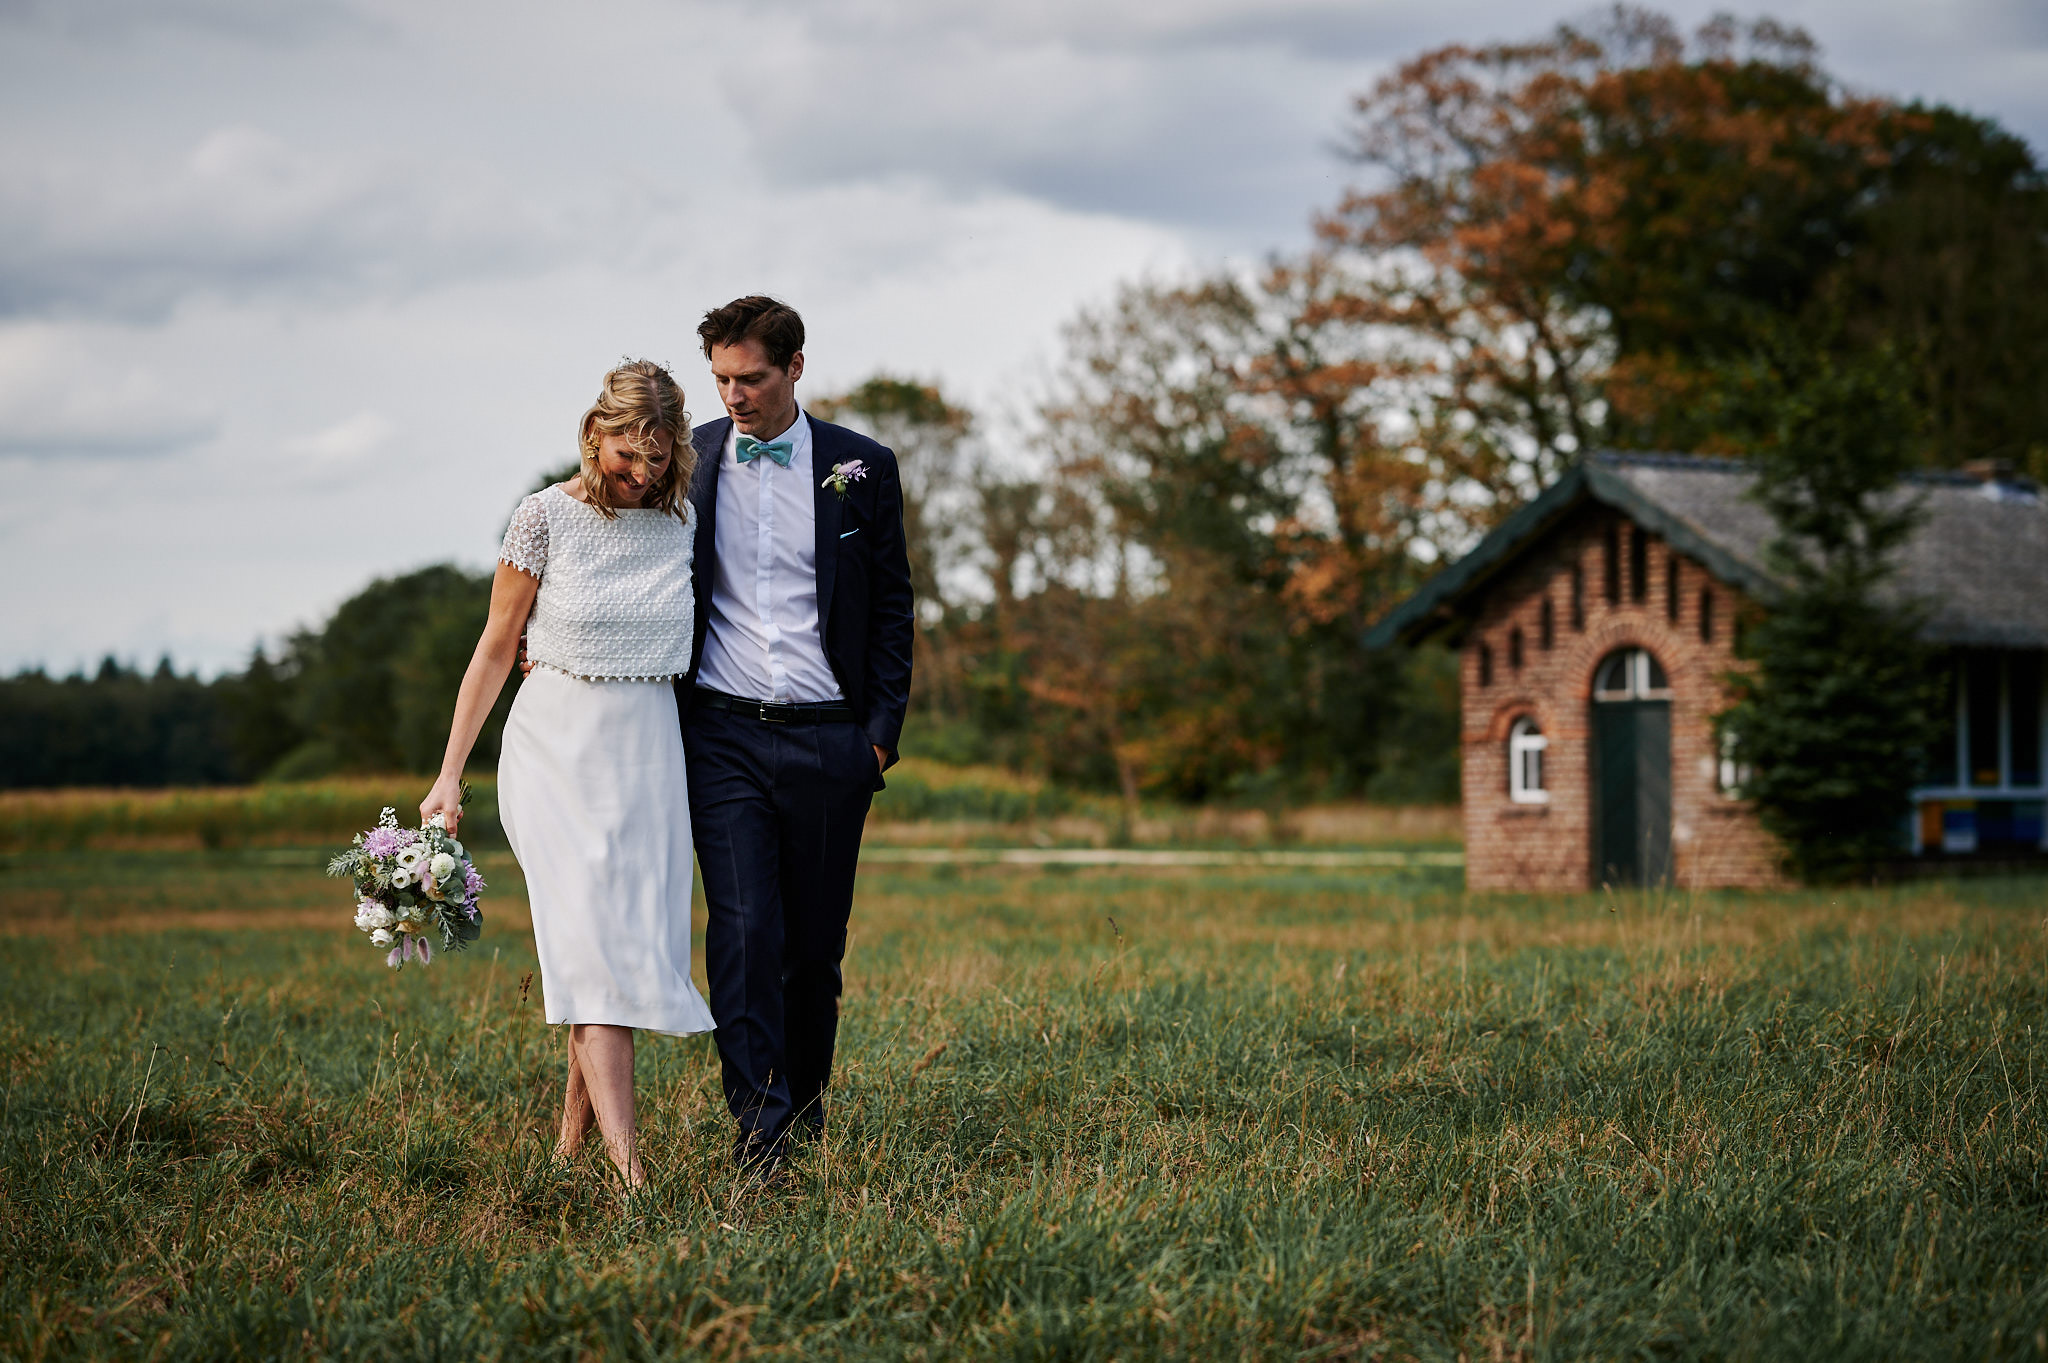 Ein Paar in Hochzeitskleidung geht durch ein Feld, die Braut hält einen Blumenstrauß und der Bräutigam legt seinen Arm um sie.